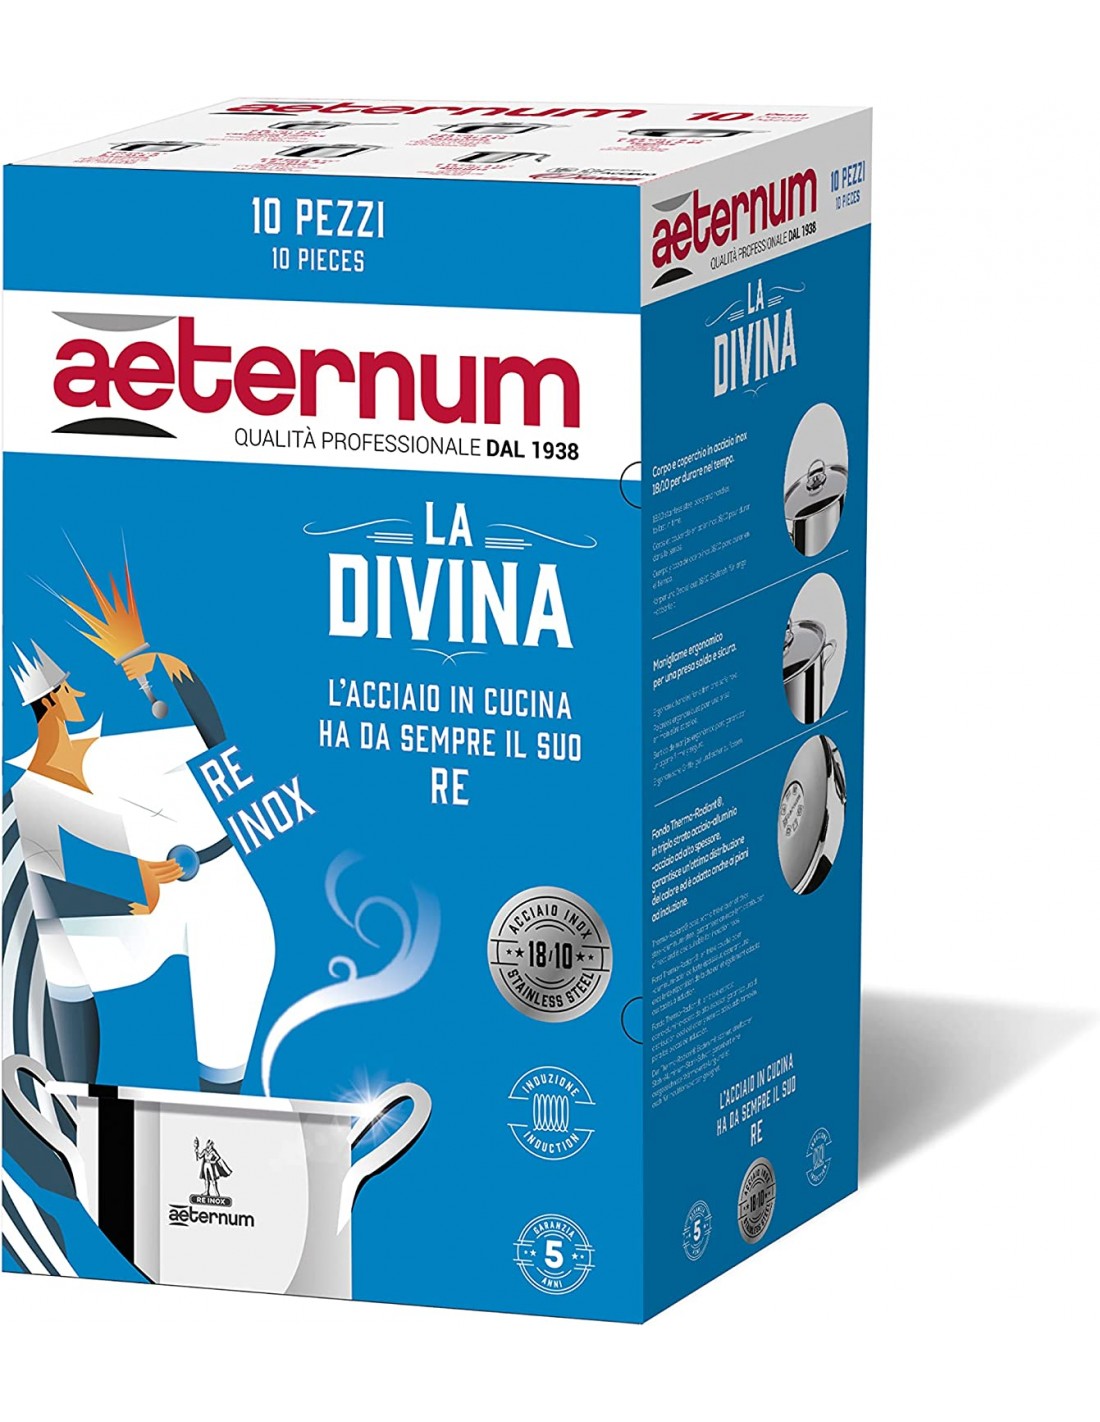 Aeternum : BATTERIA-DI-PENTOLE-AETERNUM-10-PEZZI-ROSSA